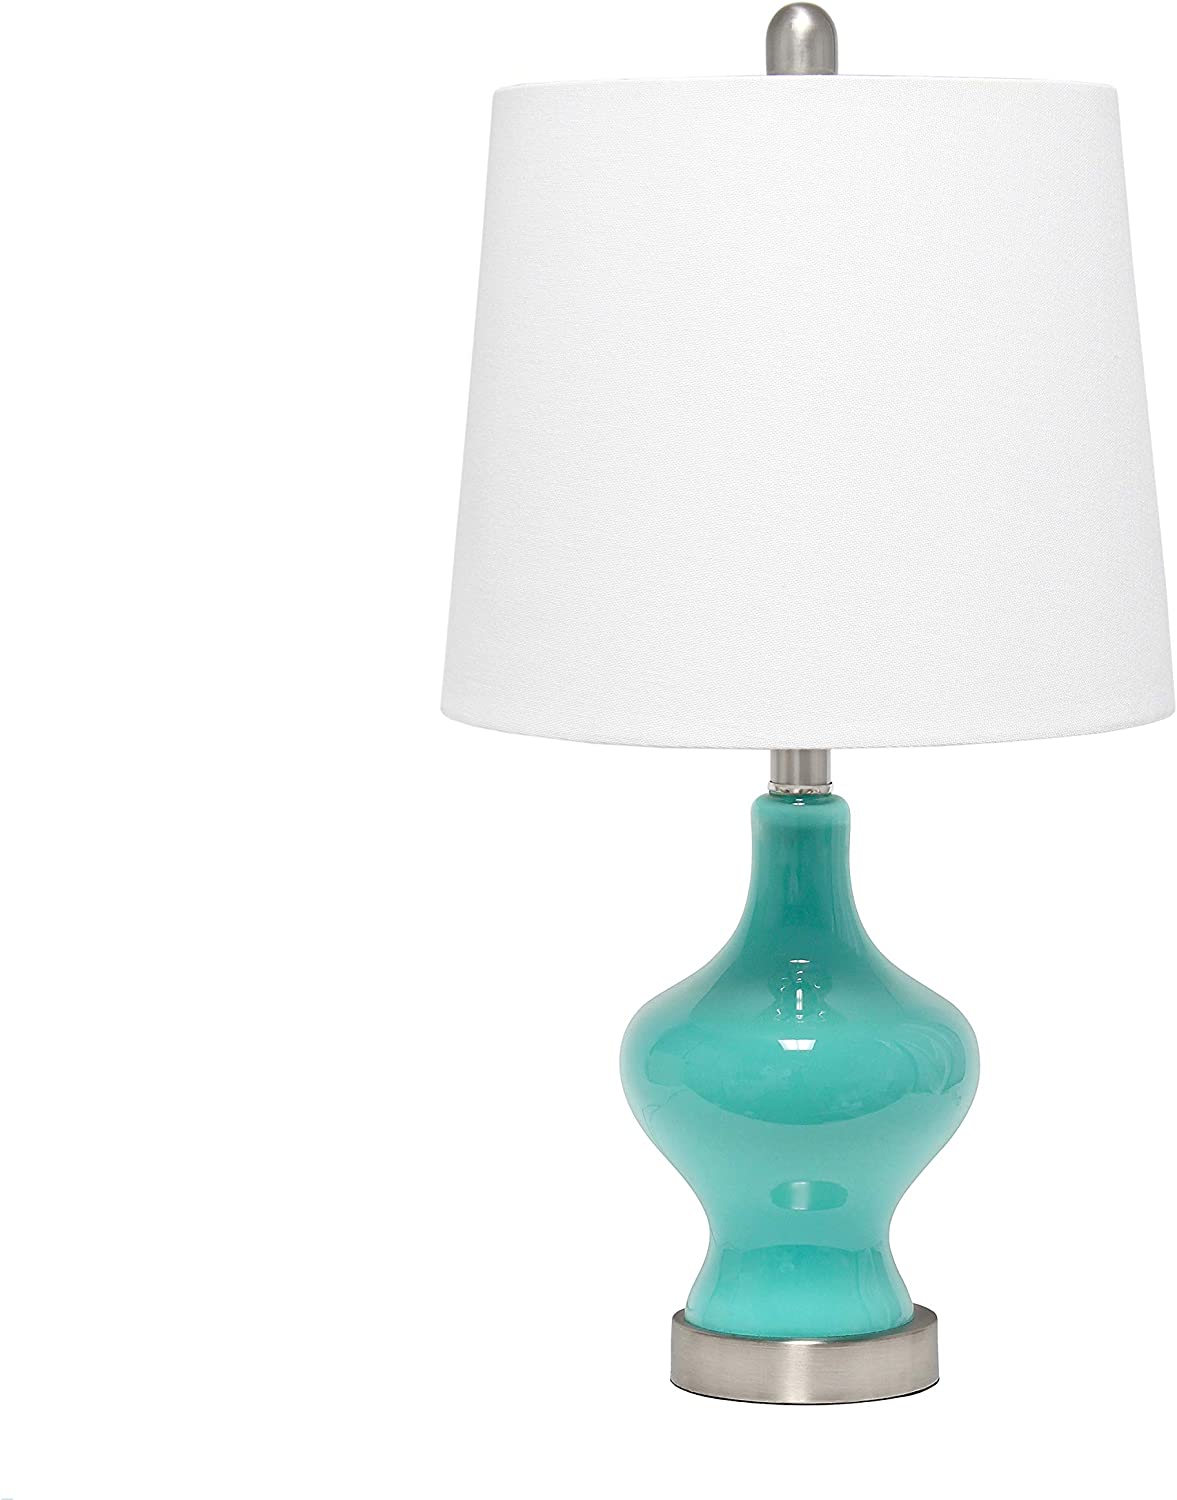 Elegant Designs LT3317-WHT Glass Gourd Shaped Table Lamp, White/Linen White